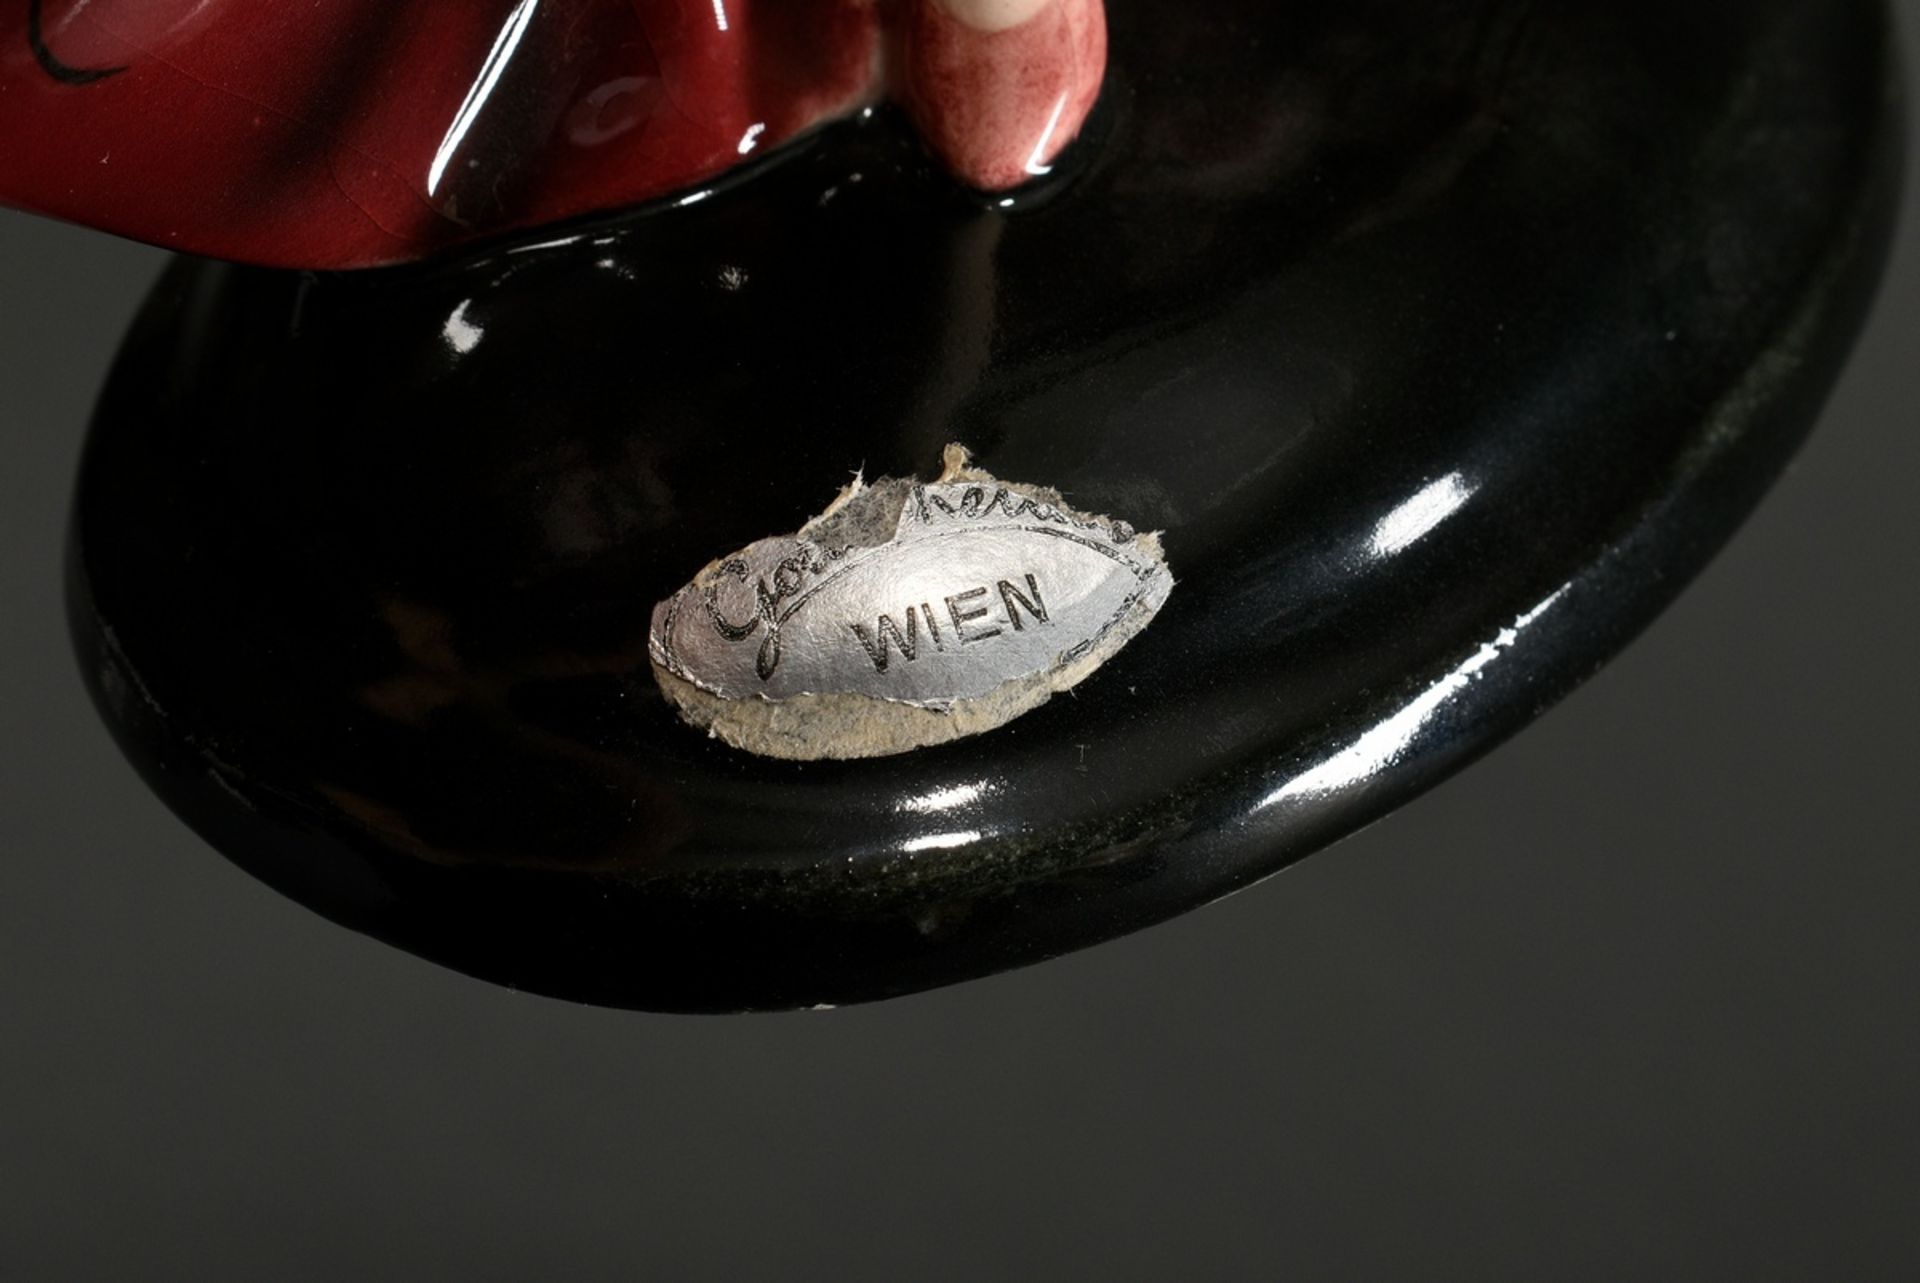 Goldscheider Figur "Tänzerin", Keramik farbig bemalt und glasiert, am Sockel verso sign. "Lorenzl", - Bild 4 aus 5